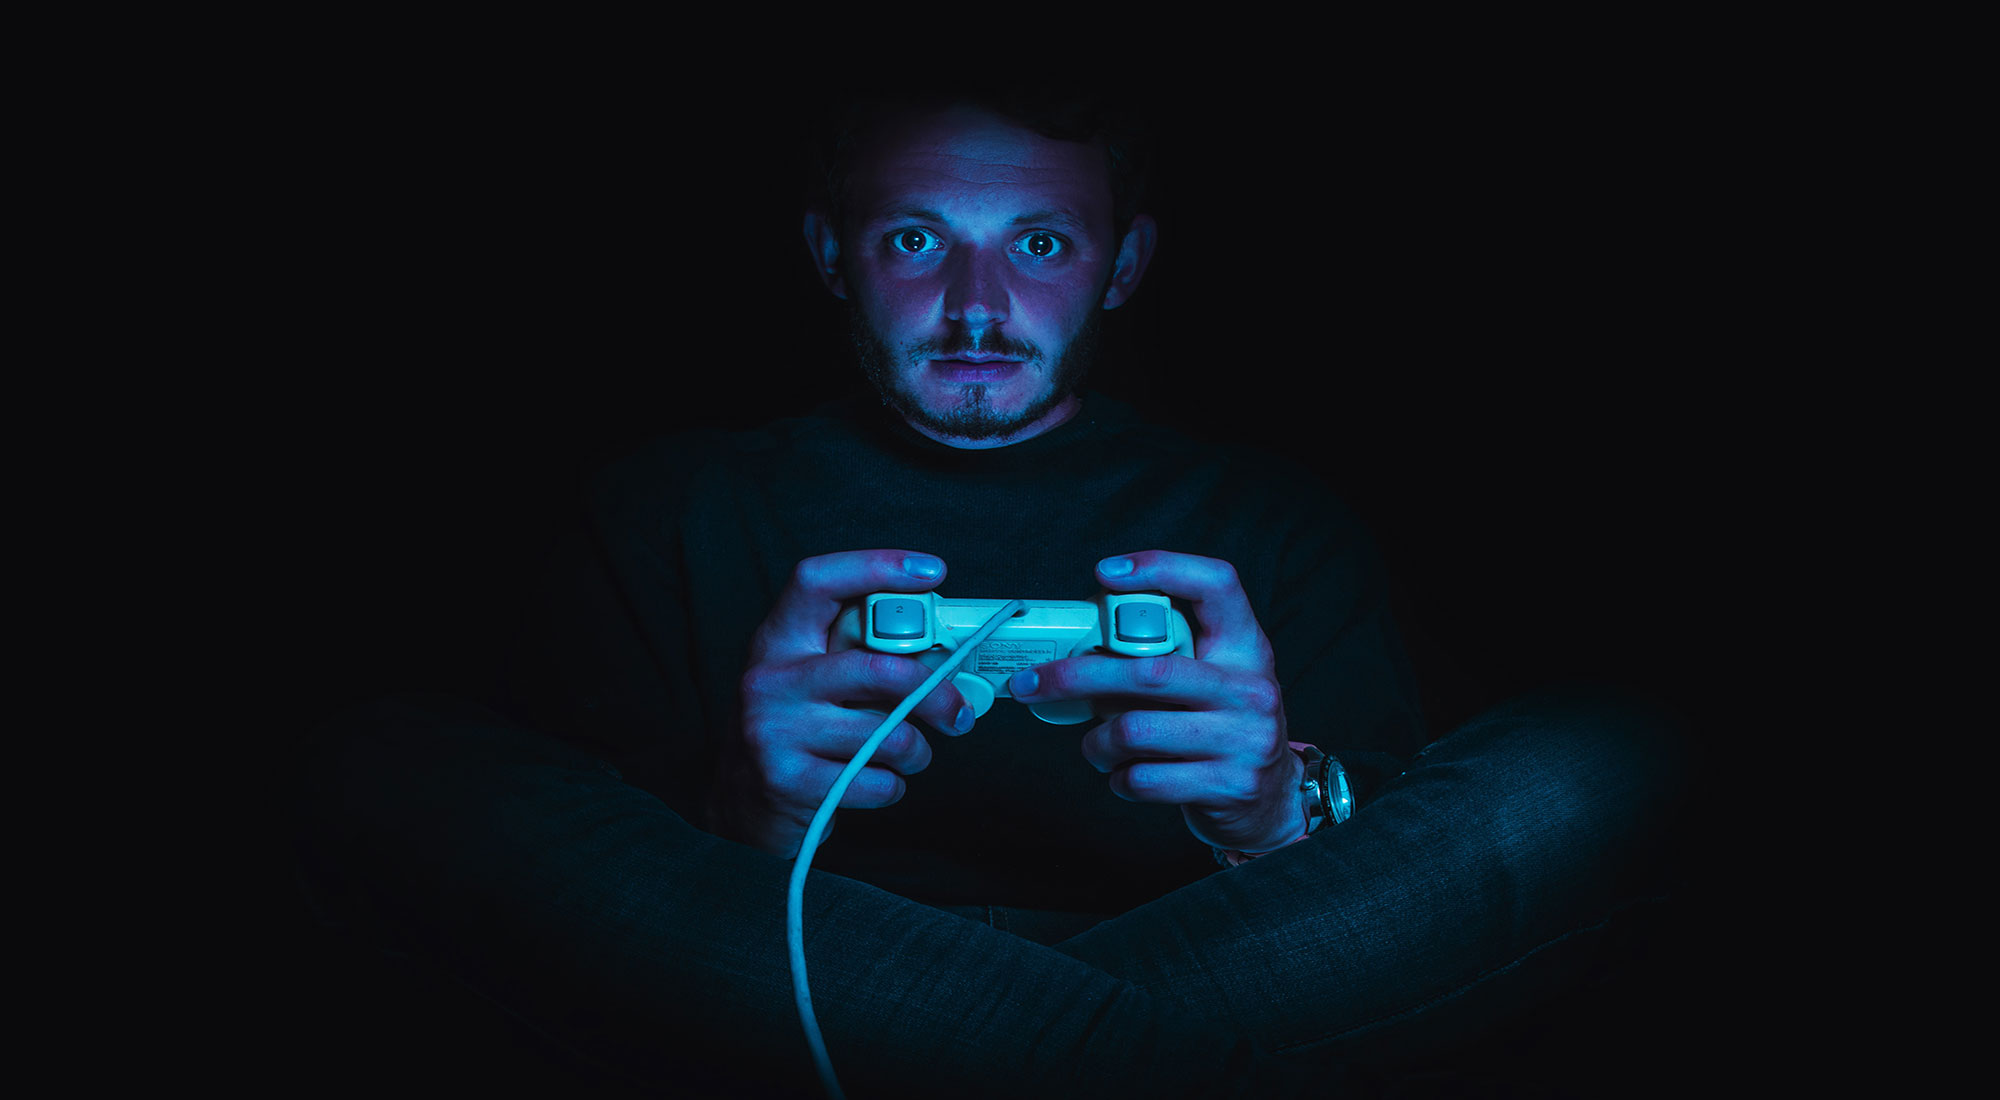 violent video games cause bad behavior